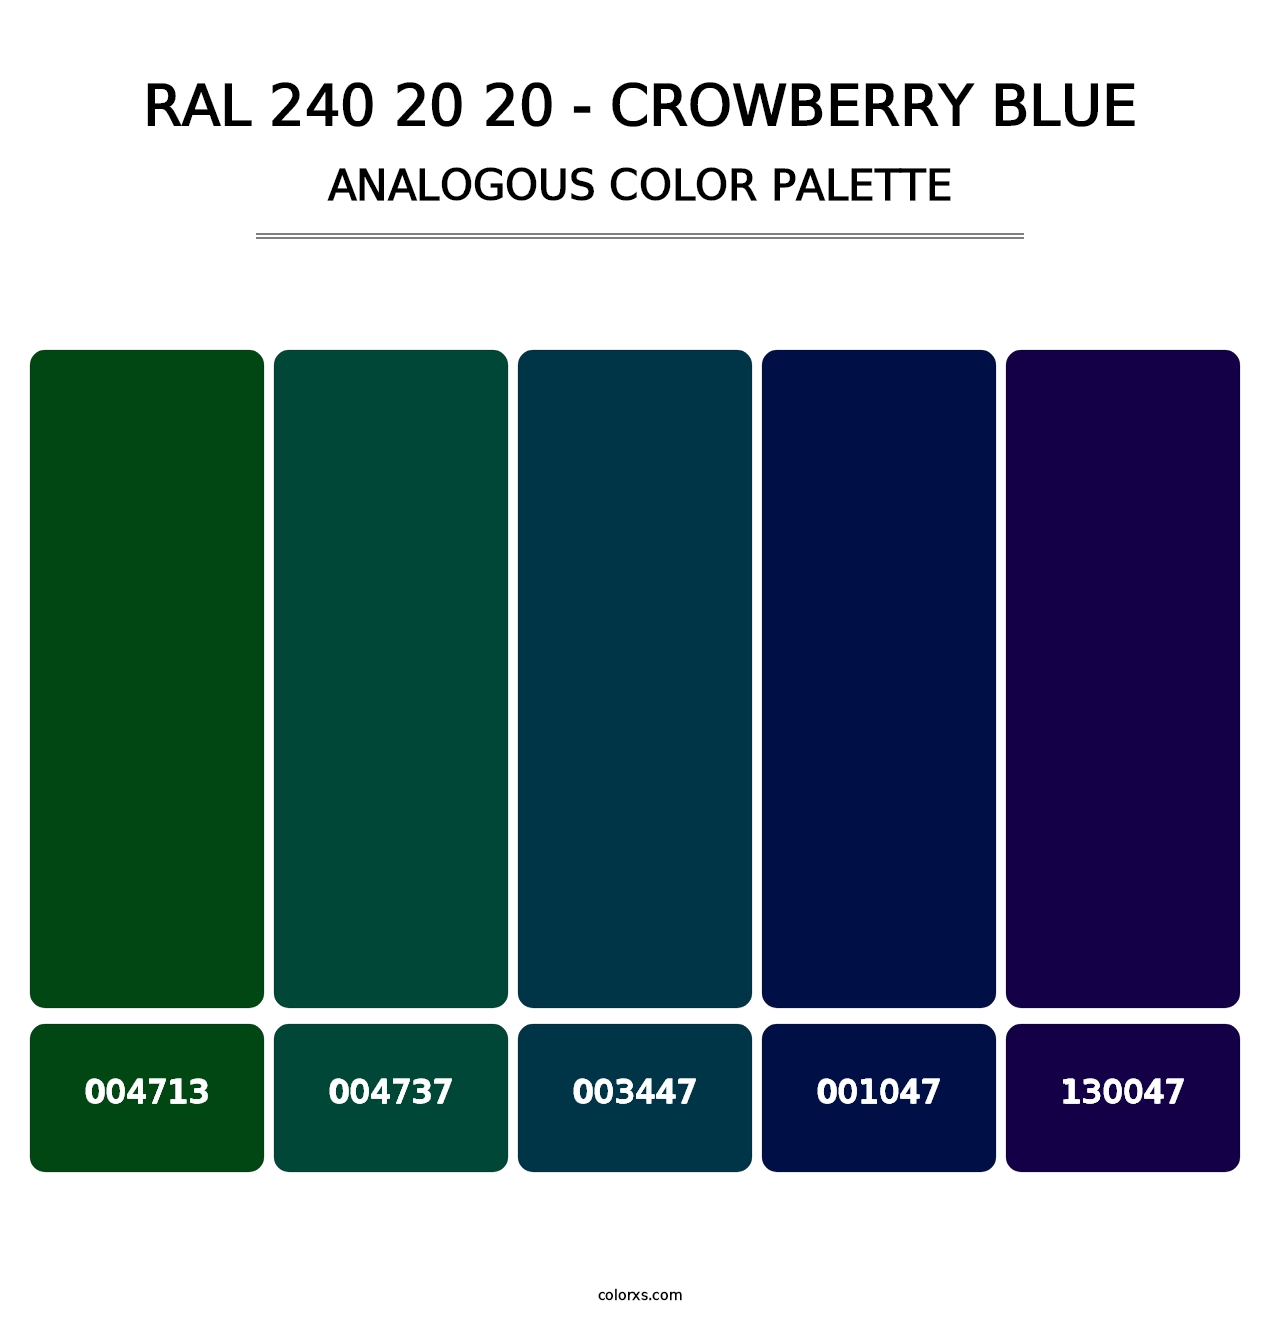 RAL 240 20 20 - Crowberry Blue - Analogous Color Palette